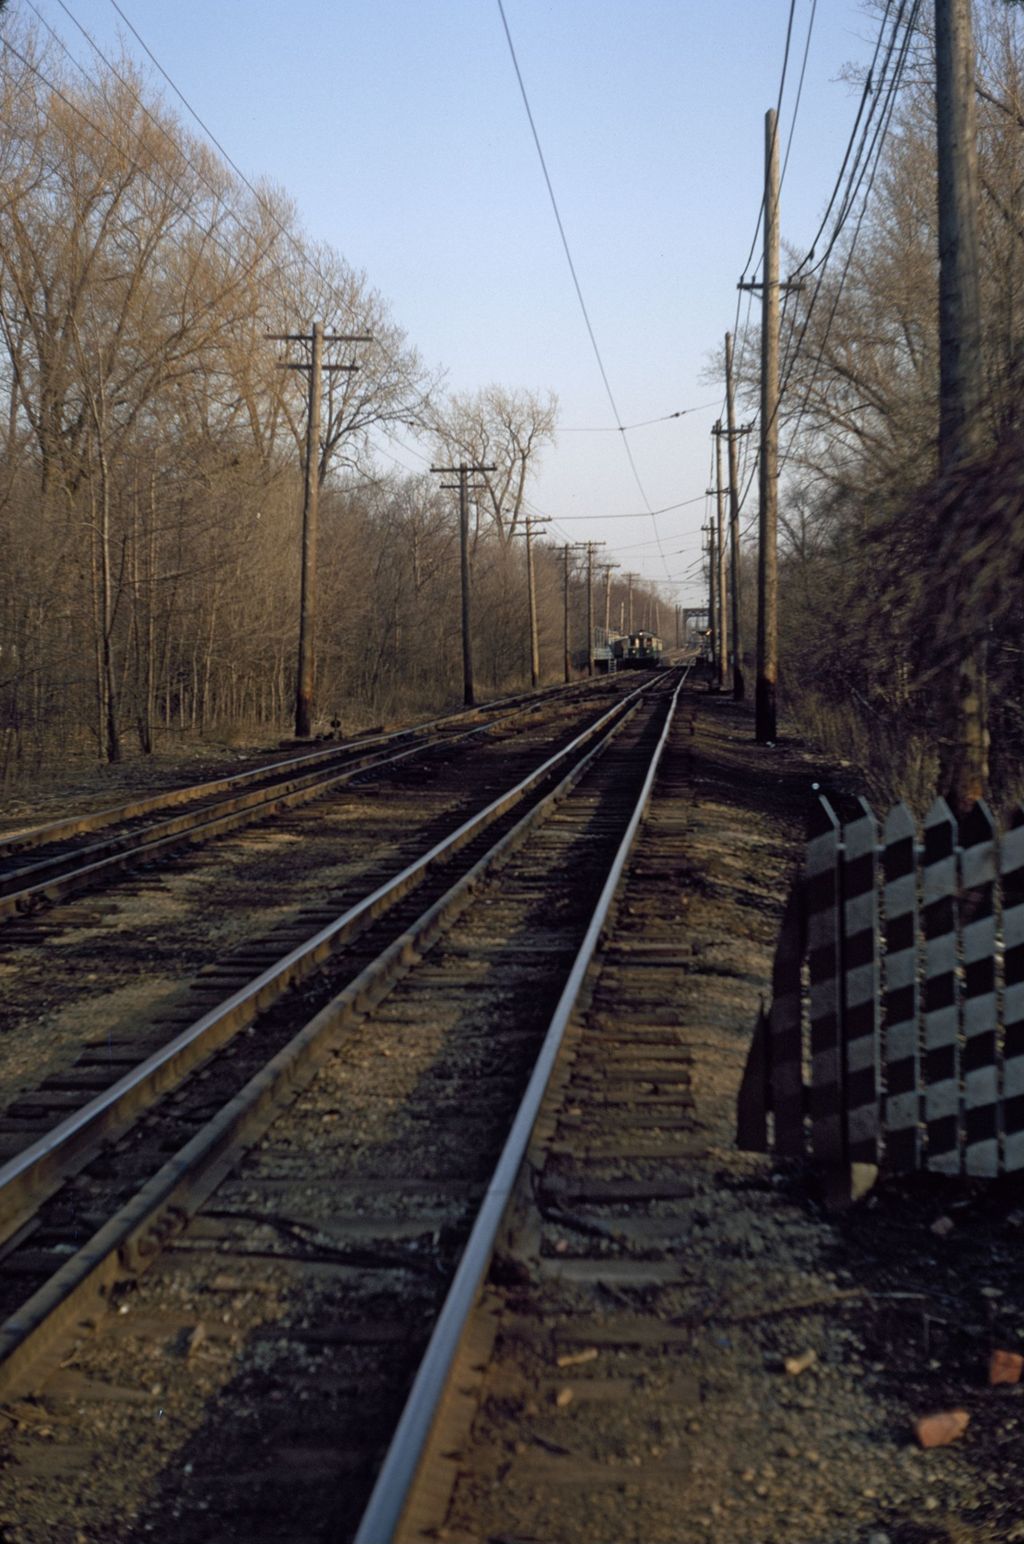 Miniature of CTA tracks, Evanston